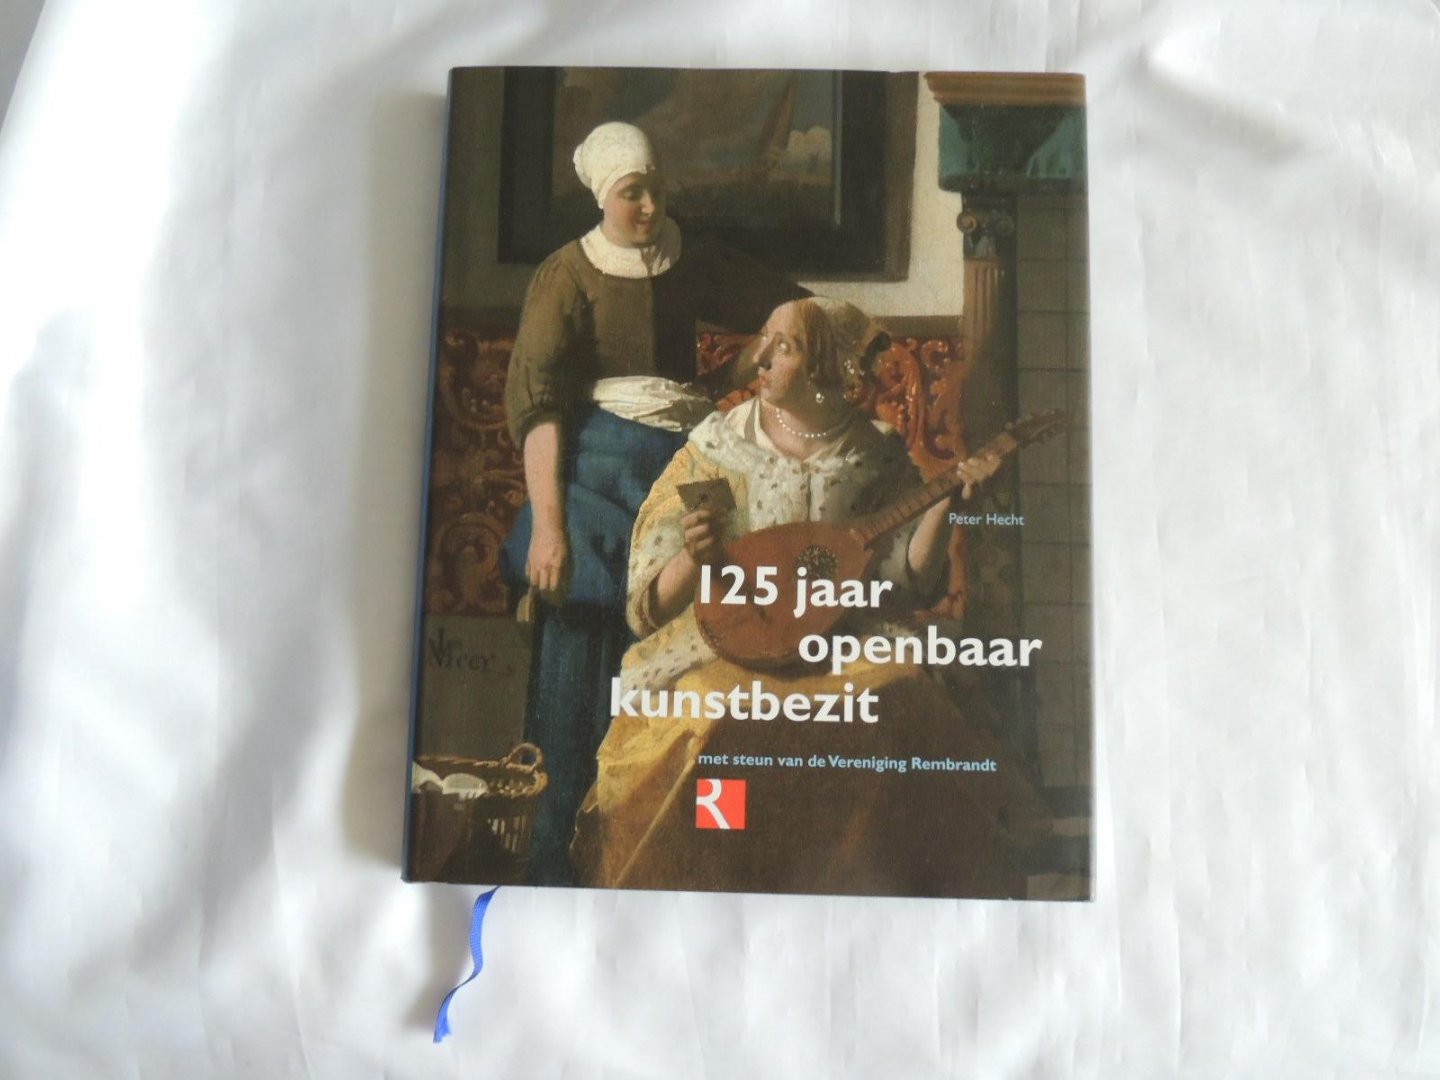 Hecht, Peter P. - 125 Jaar openbaar kunstbezit / met steun van de Vereniging Rembrandt  ORGINELE SLIPCASE